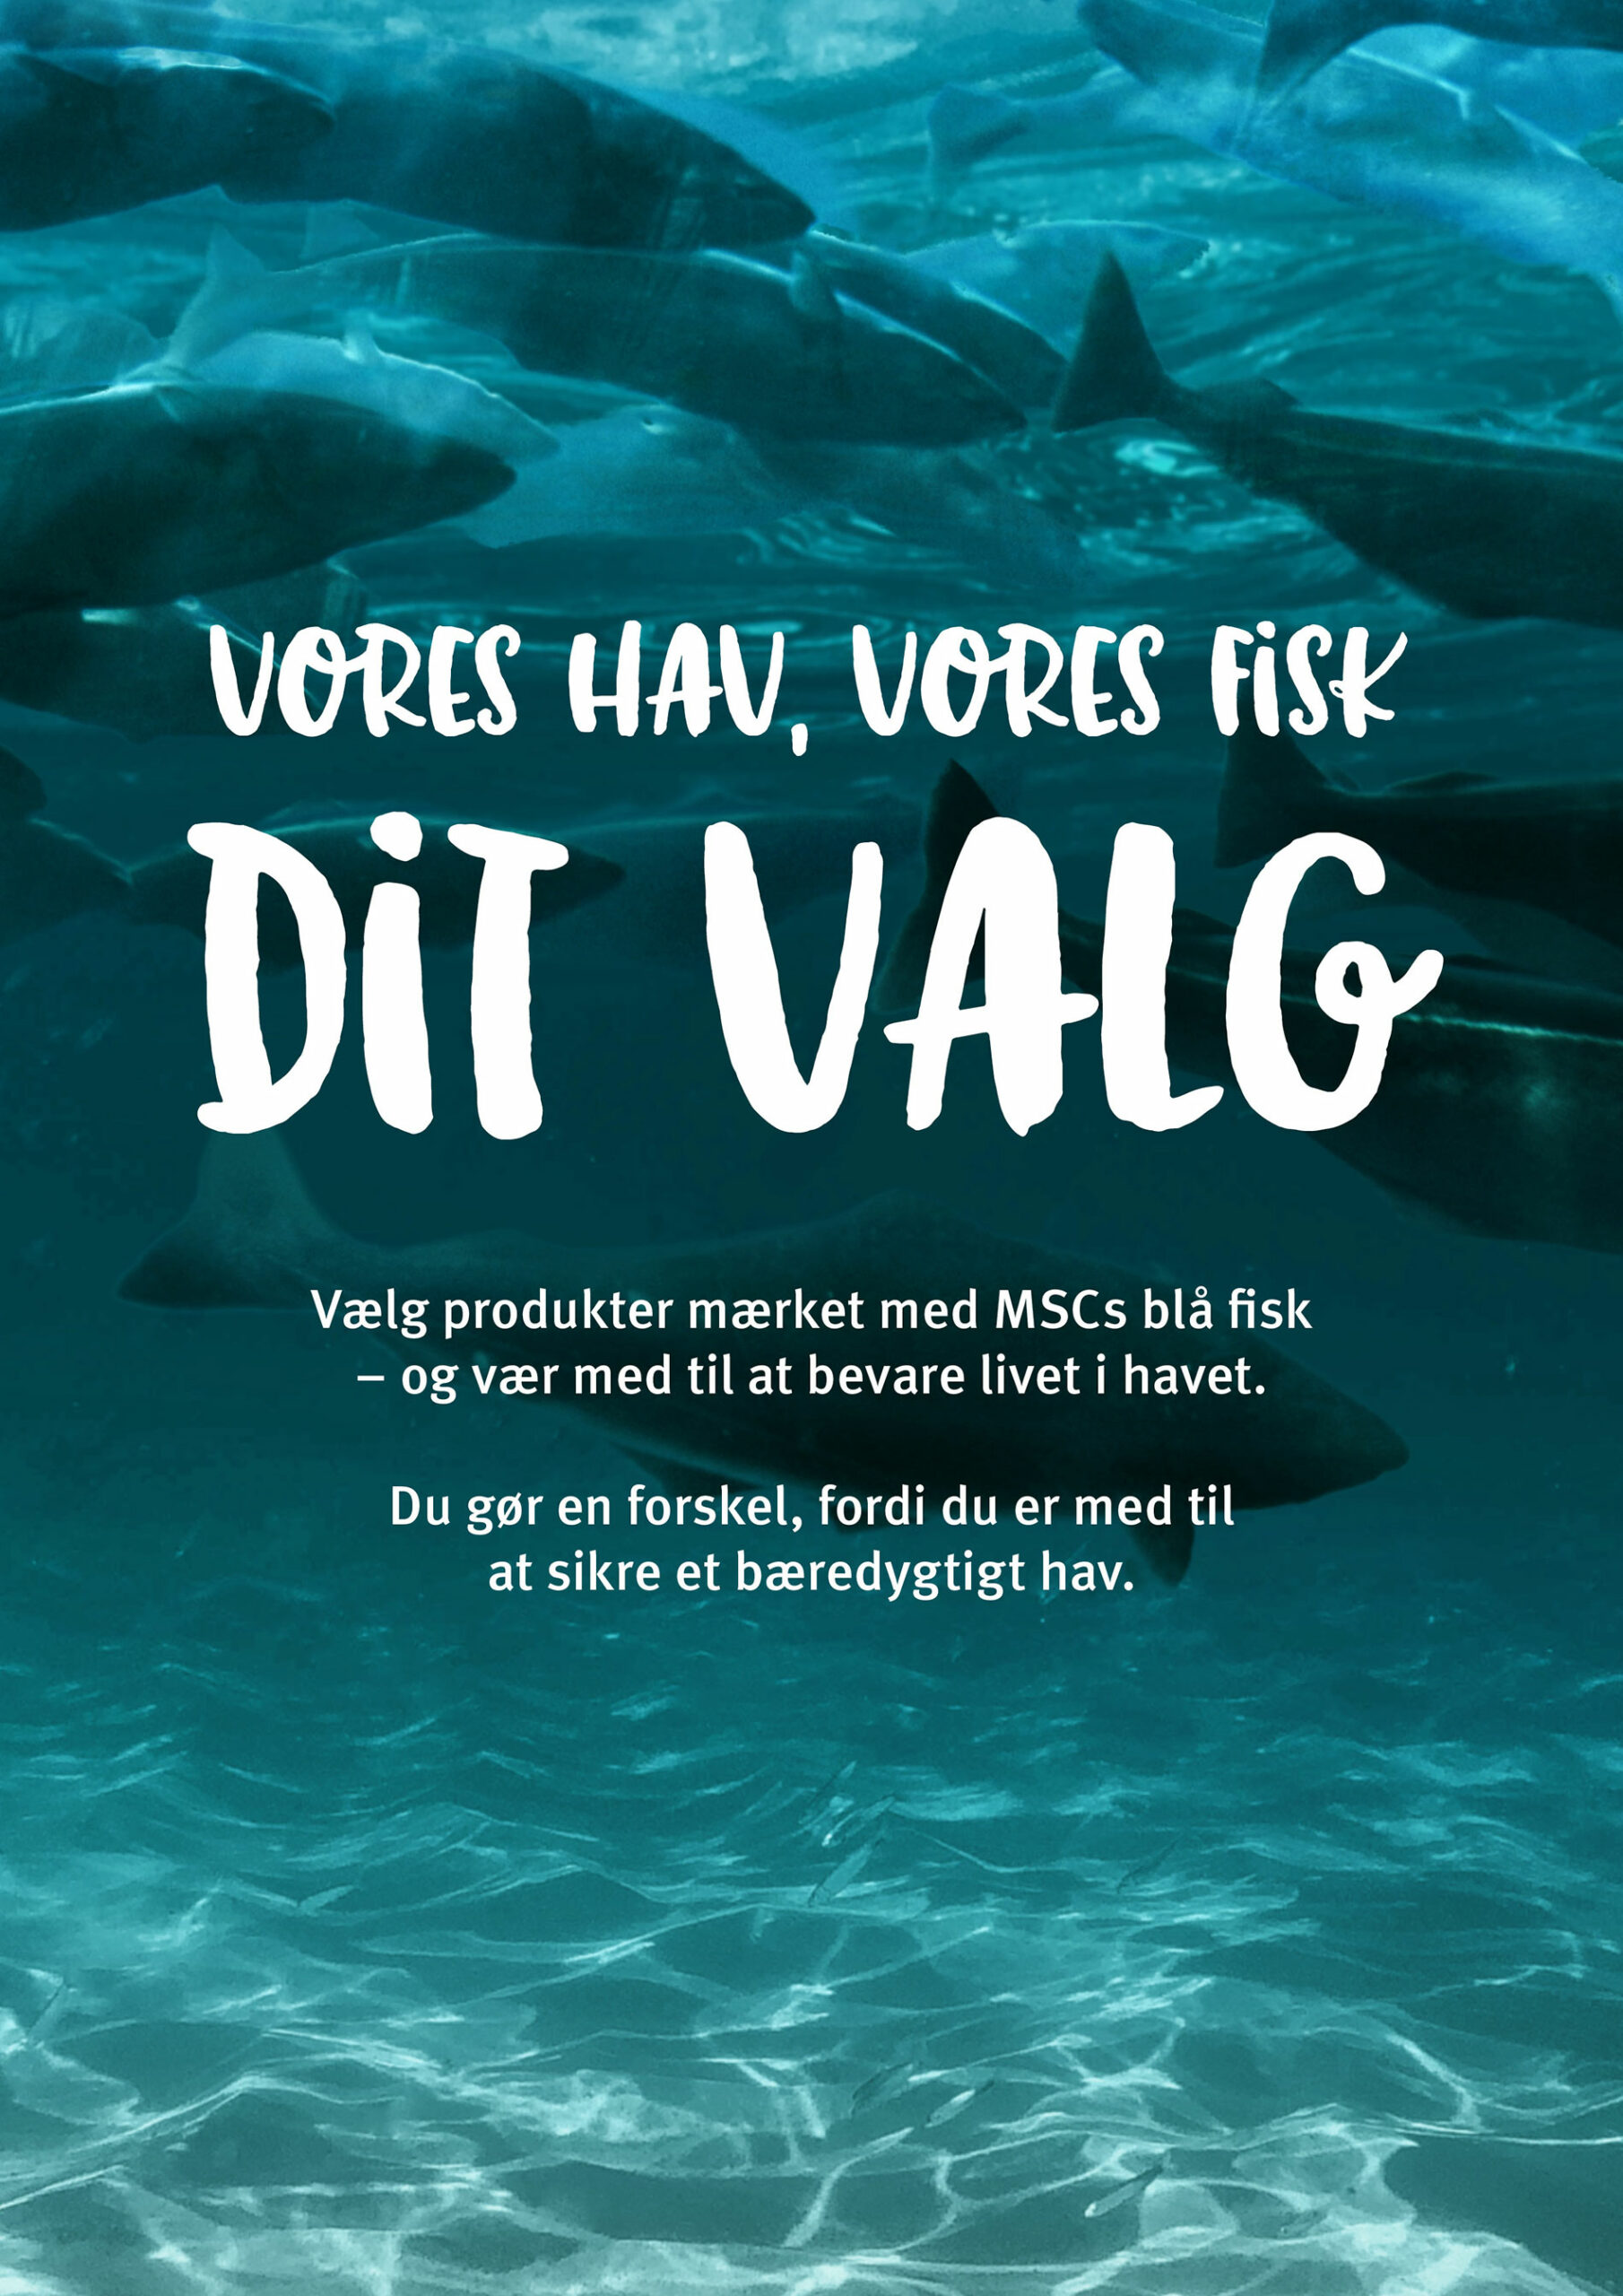 Billede fra MSC's 2020 kampagne med budskabet: "Vores hav, vores fisk, dit valg."